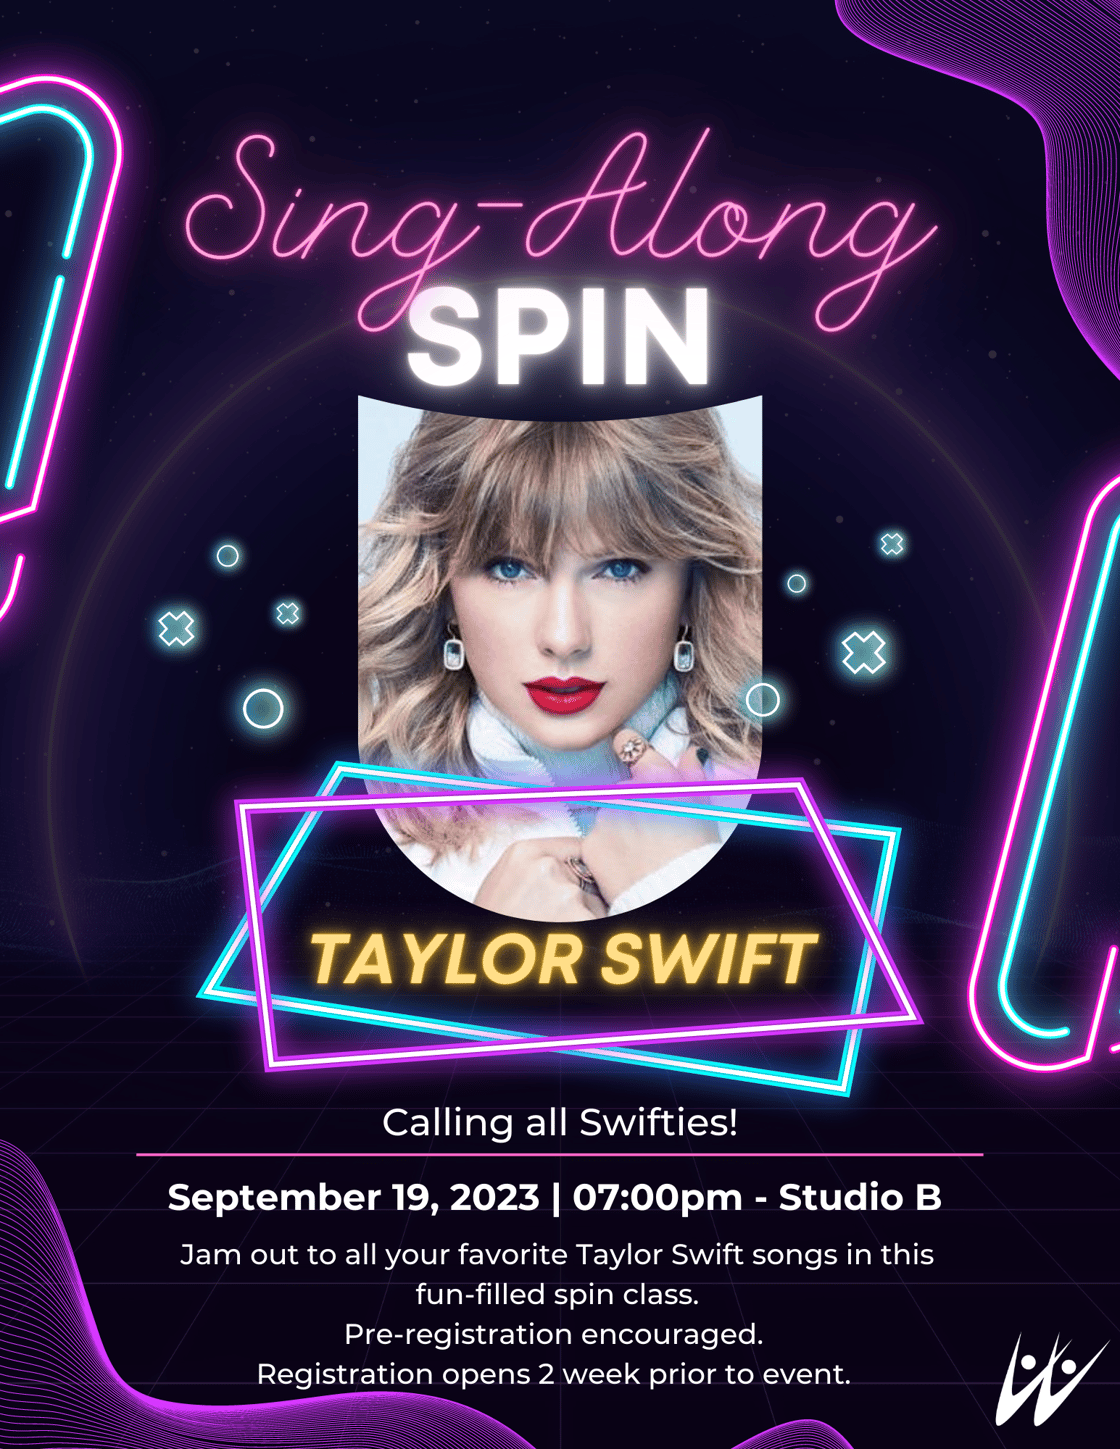 Sing-Along Spin - TSwift Fall2023